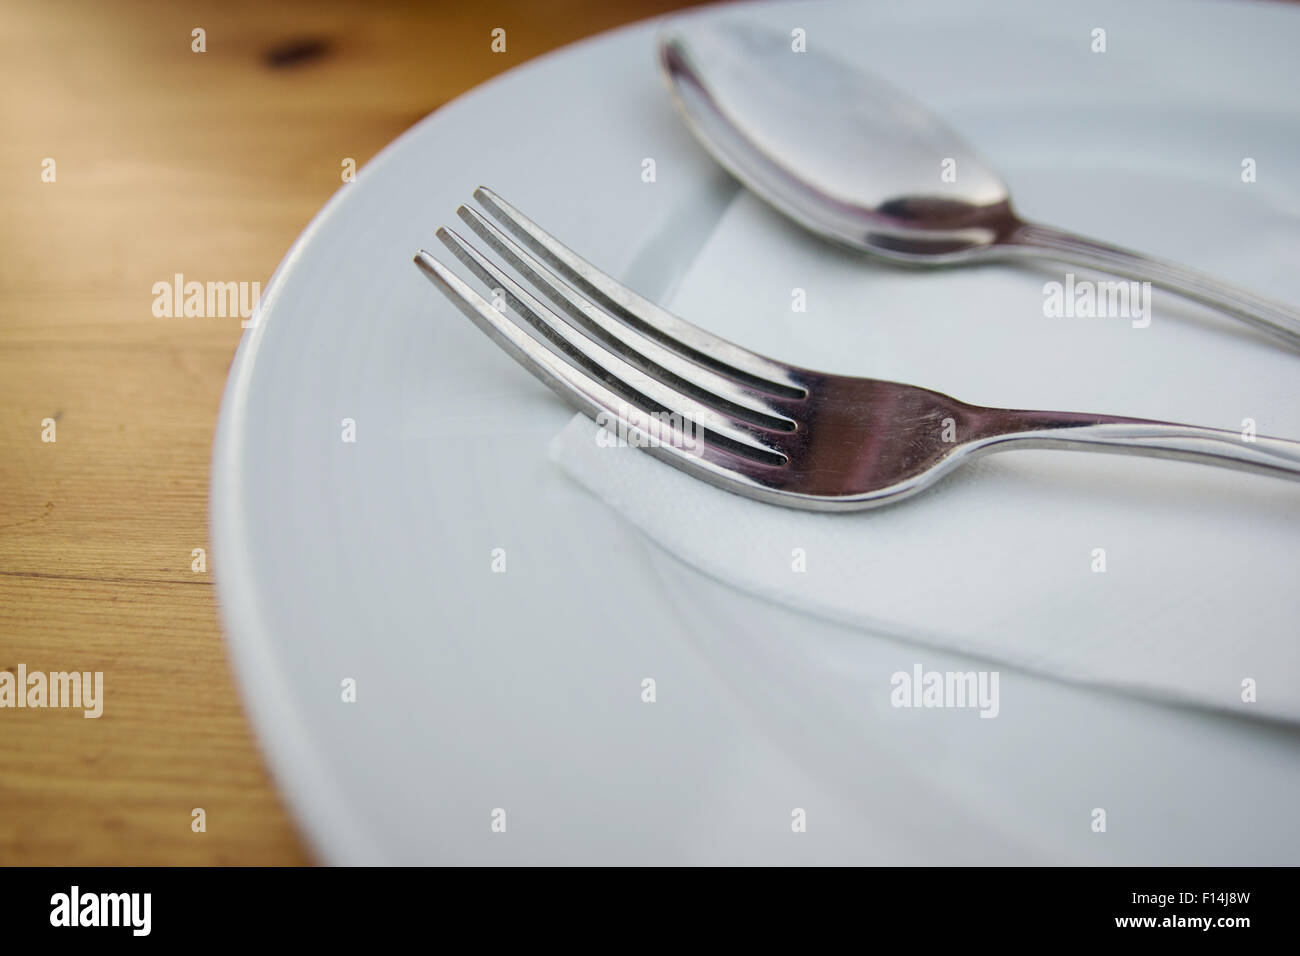 Cucchiaio e forchetta con piastra bianca sulla tavola di legno Foto Stock